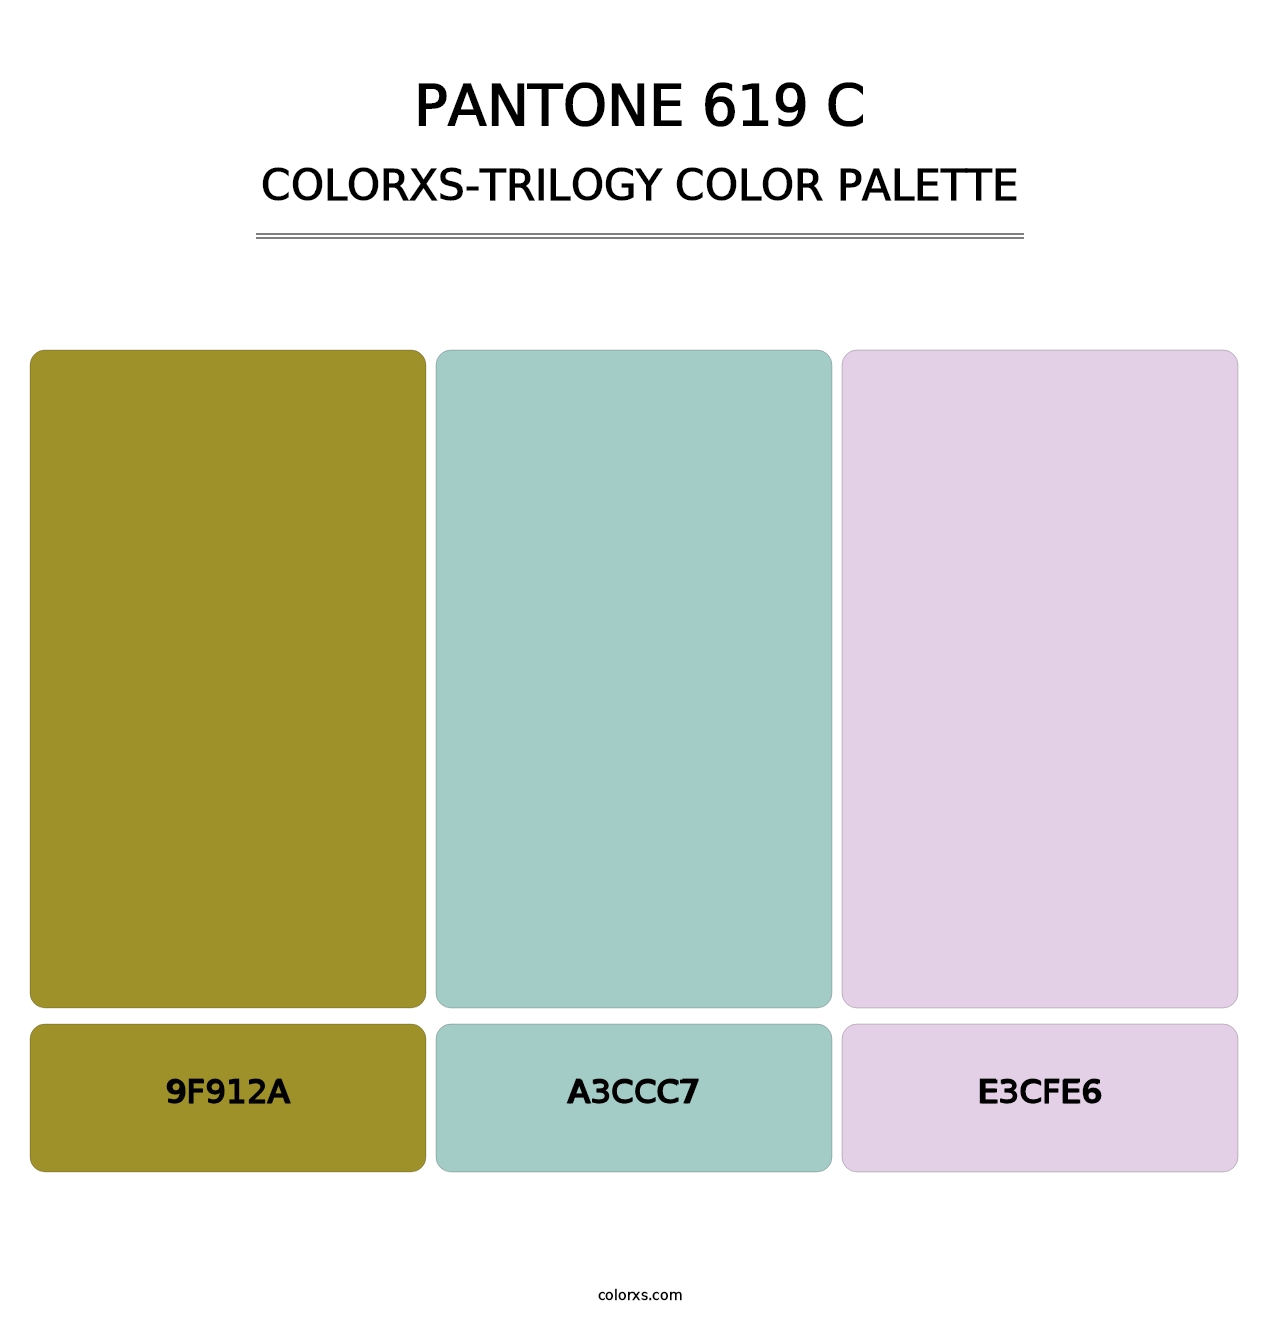 PANTONE 619 C - Colorxs Trilogy Palette